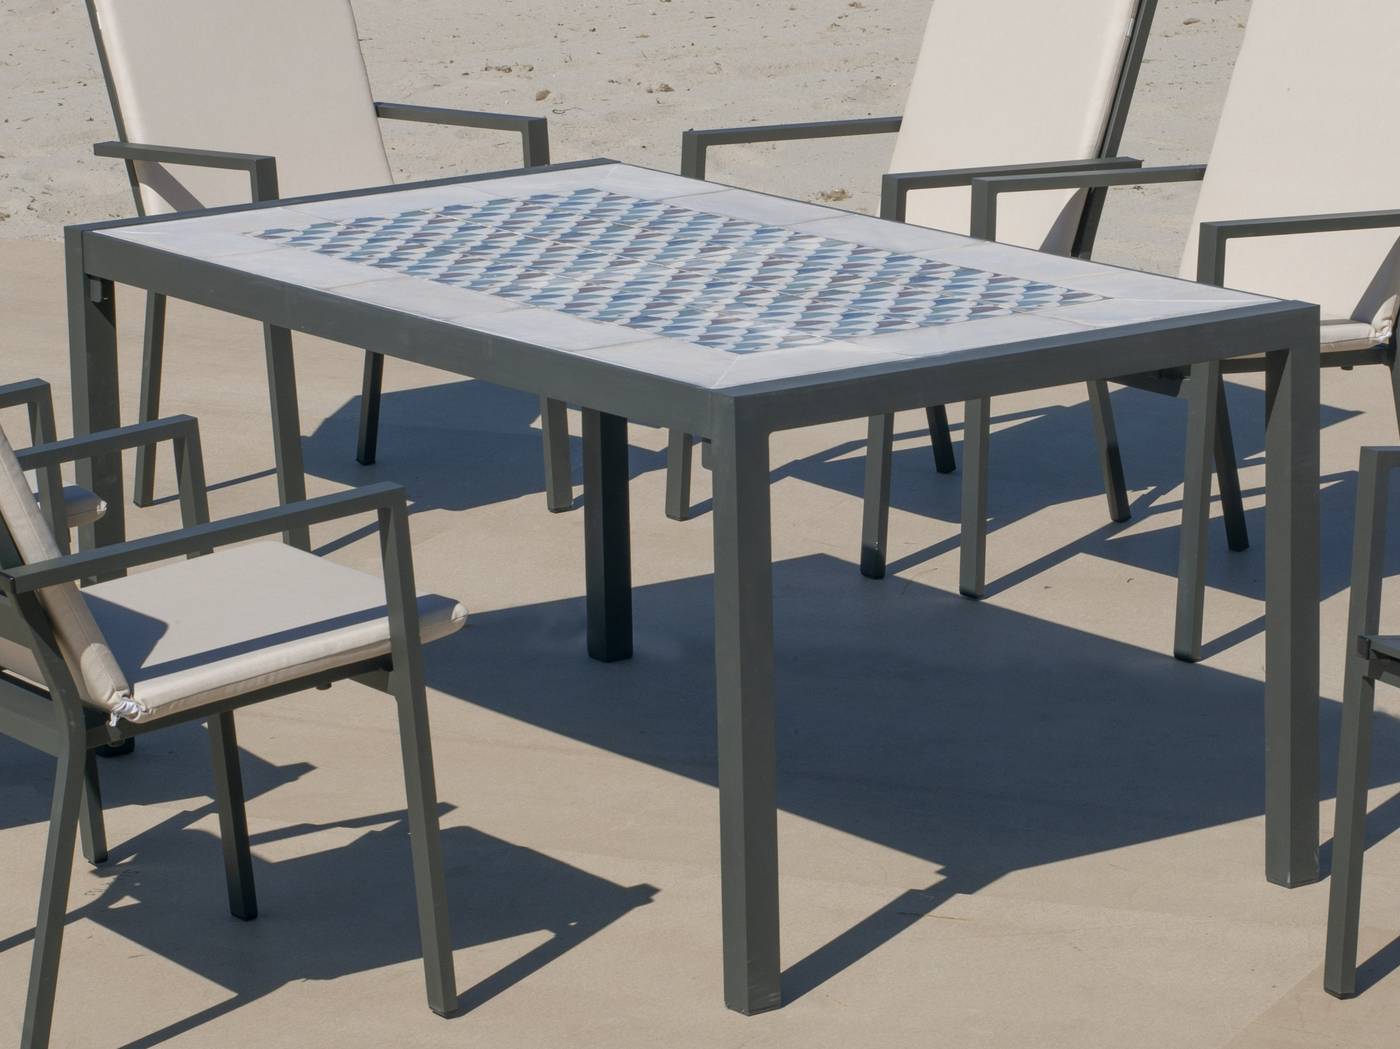 Set Góndola-160-6 Córcega - Conjunto de aluminio color antracita: Mesa rectangular con tablero mosaico de 160 cm + 6 sillones de textilen.